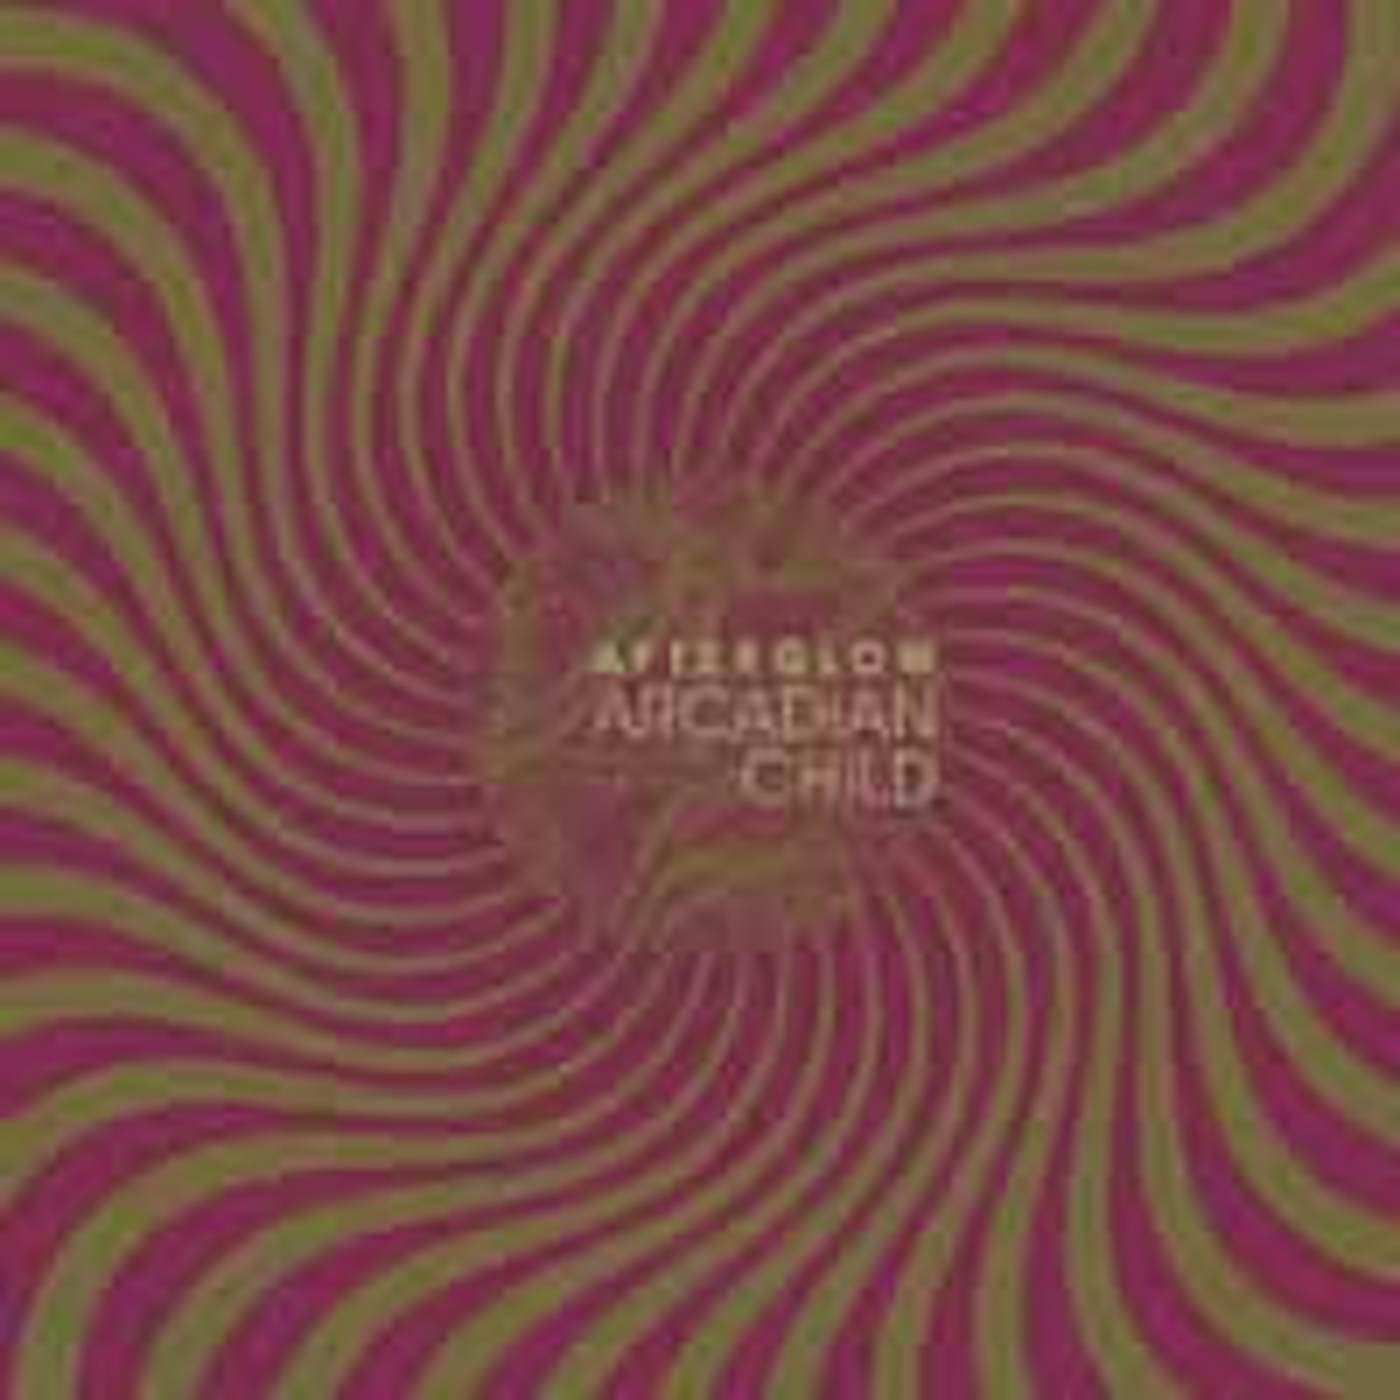 Arcadian Child LP - Afterglow (Vinyl)